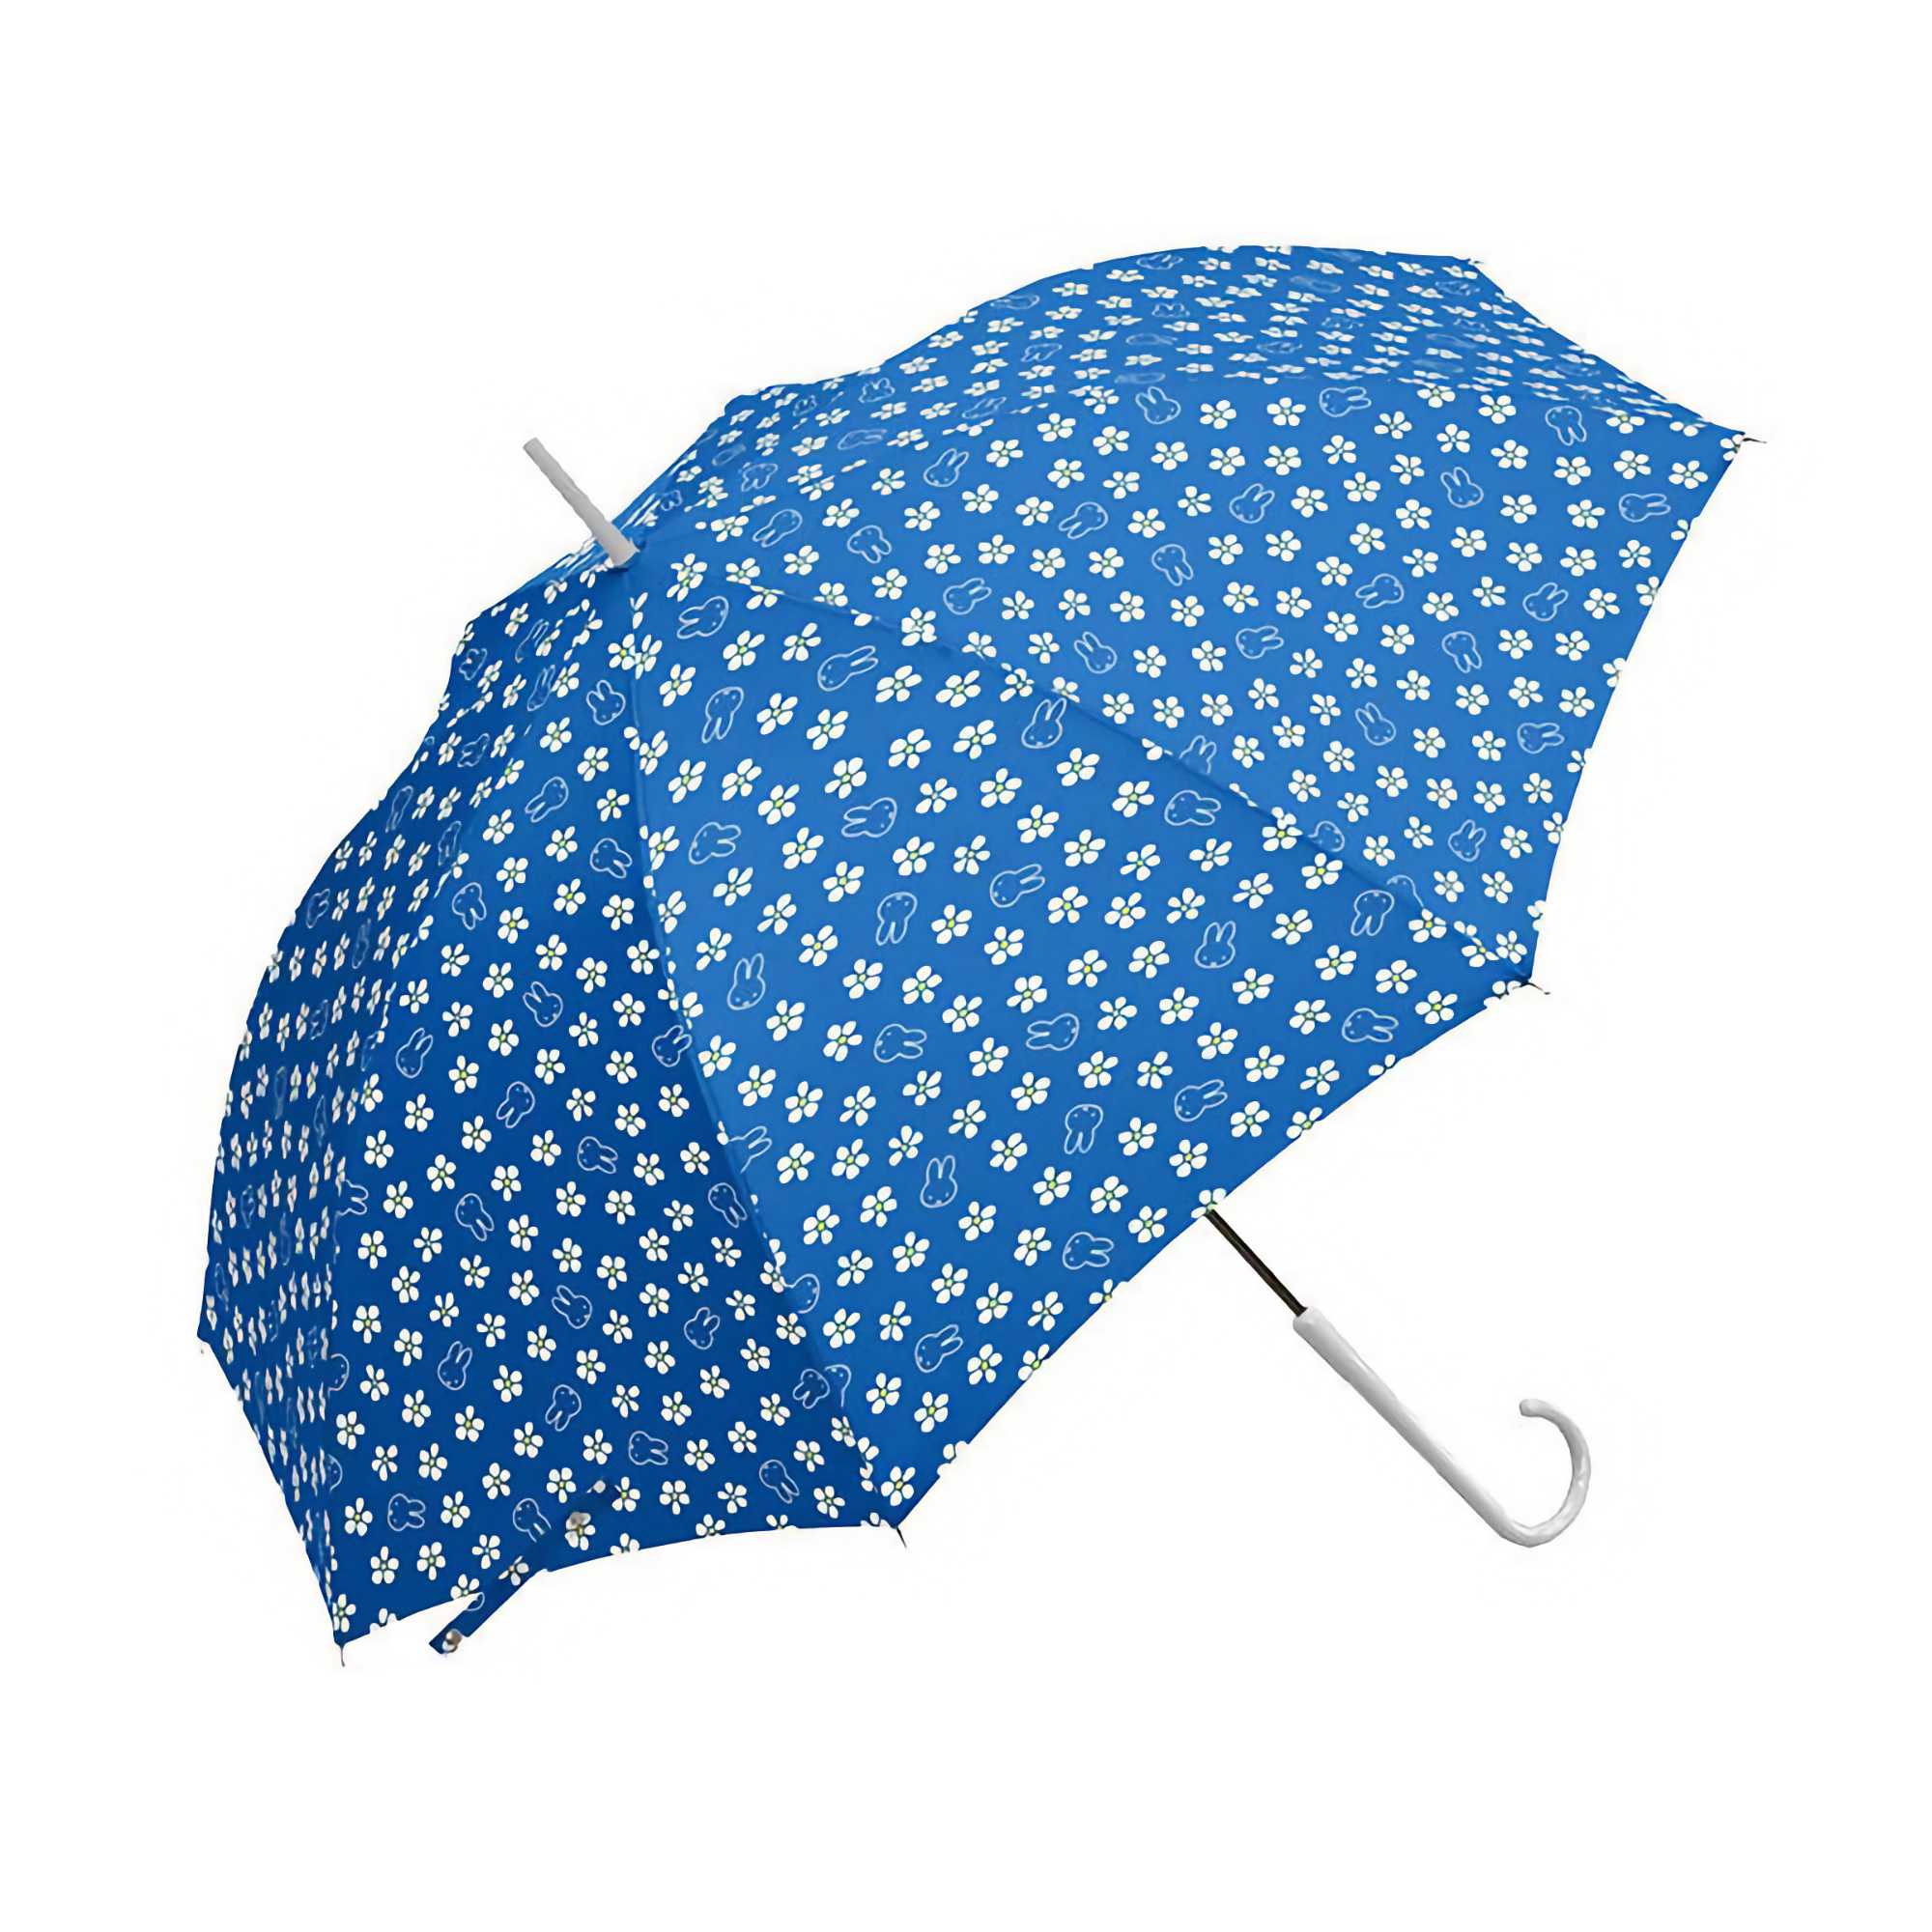 Miffy Umbrella Long Umbrella, Floral